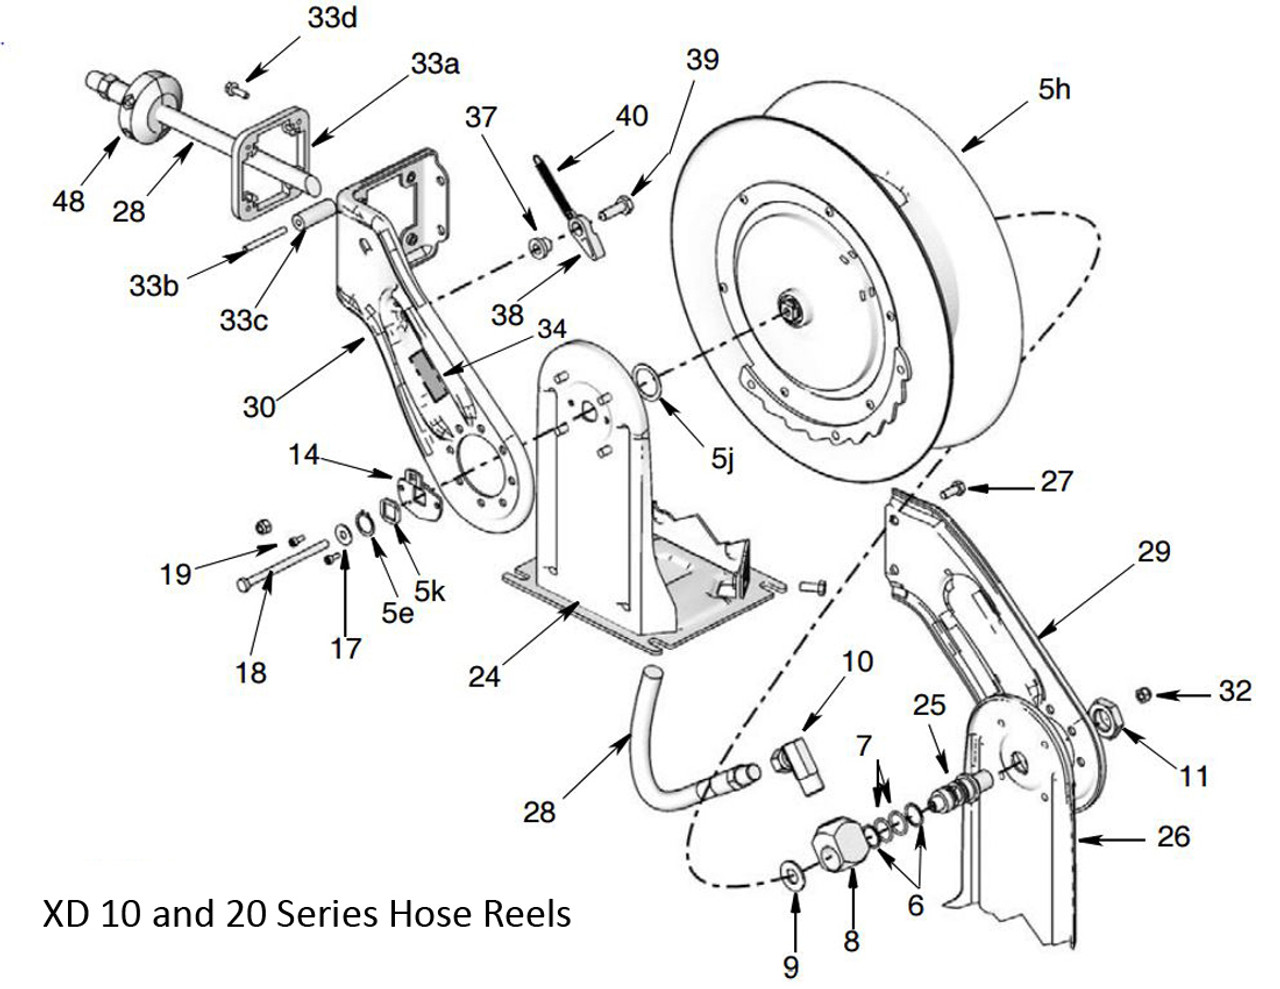 Graco XD 10 Air/Water Hose Reel Spool Repair Kit For HSL33B - John